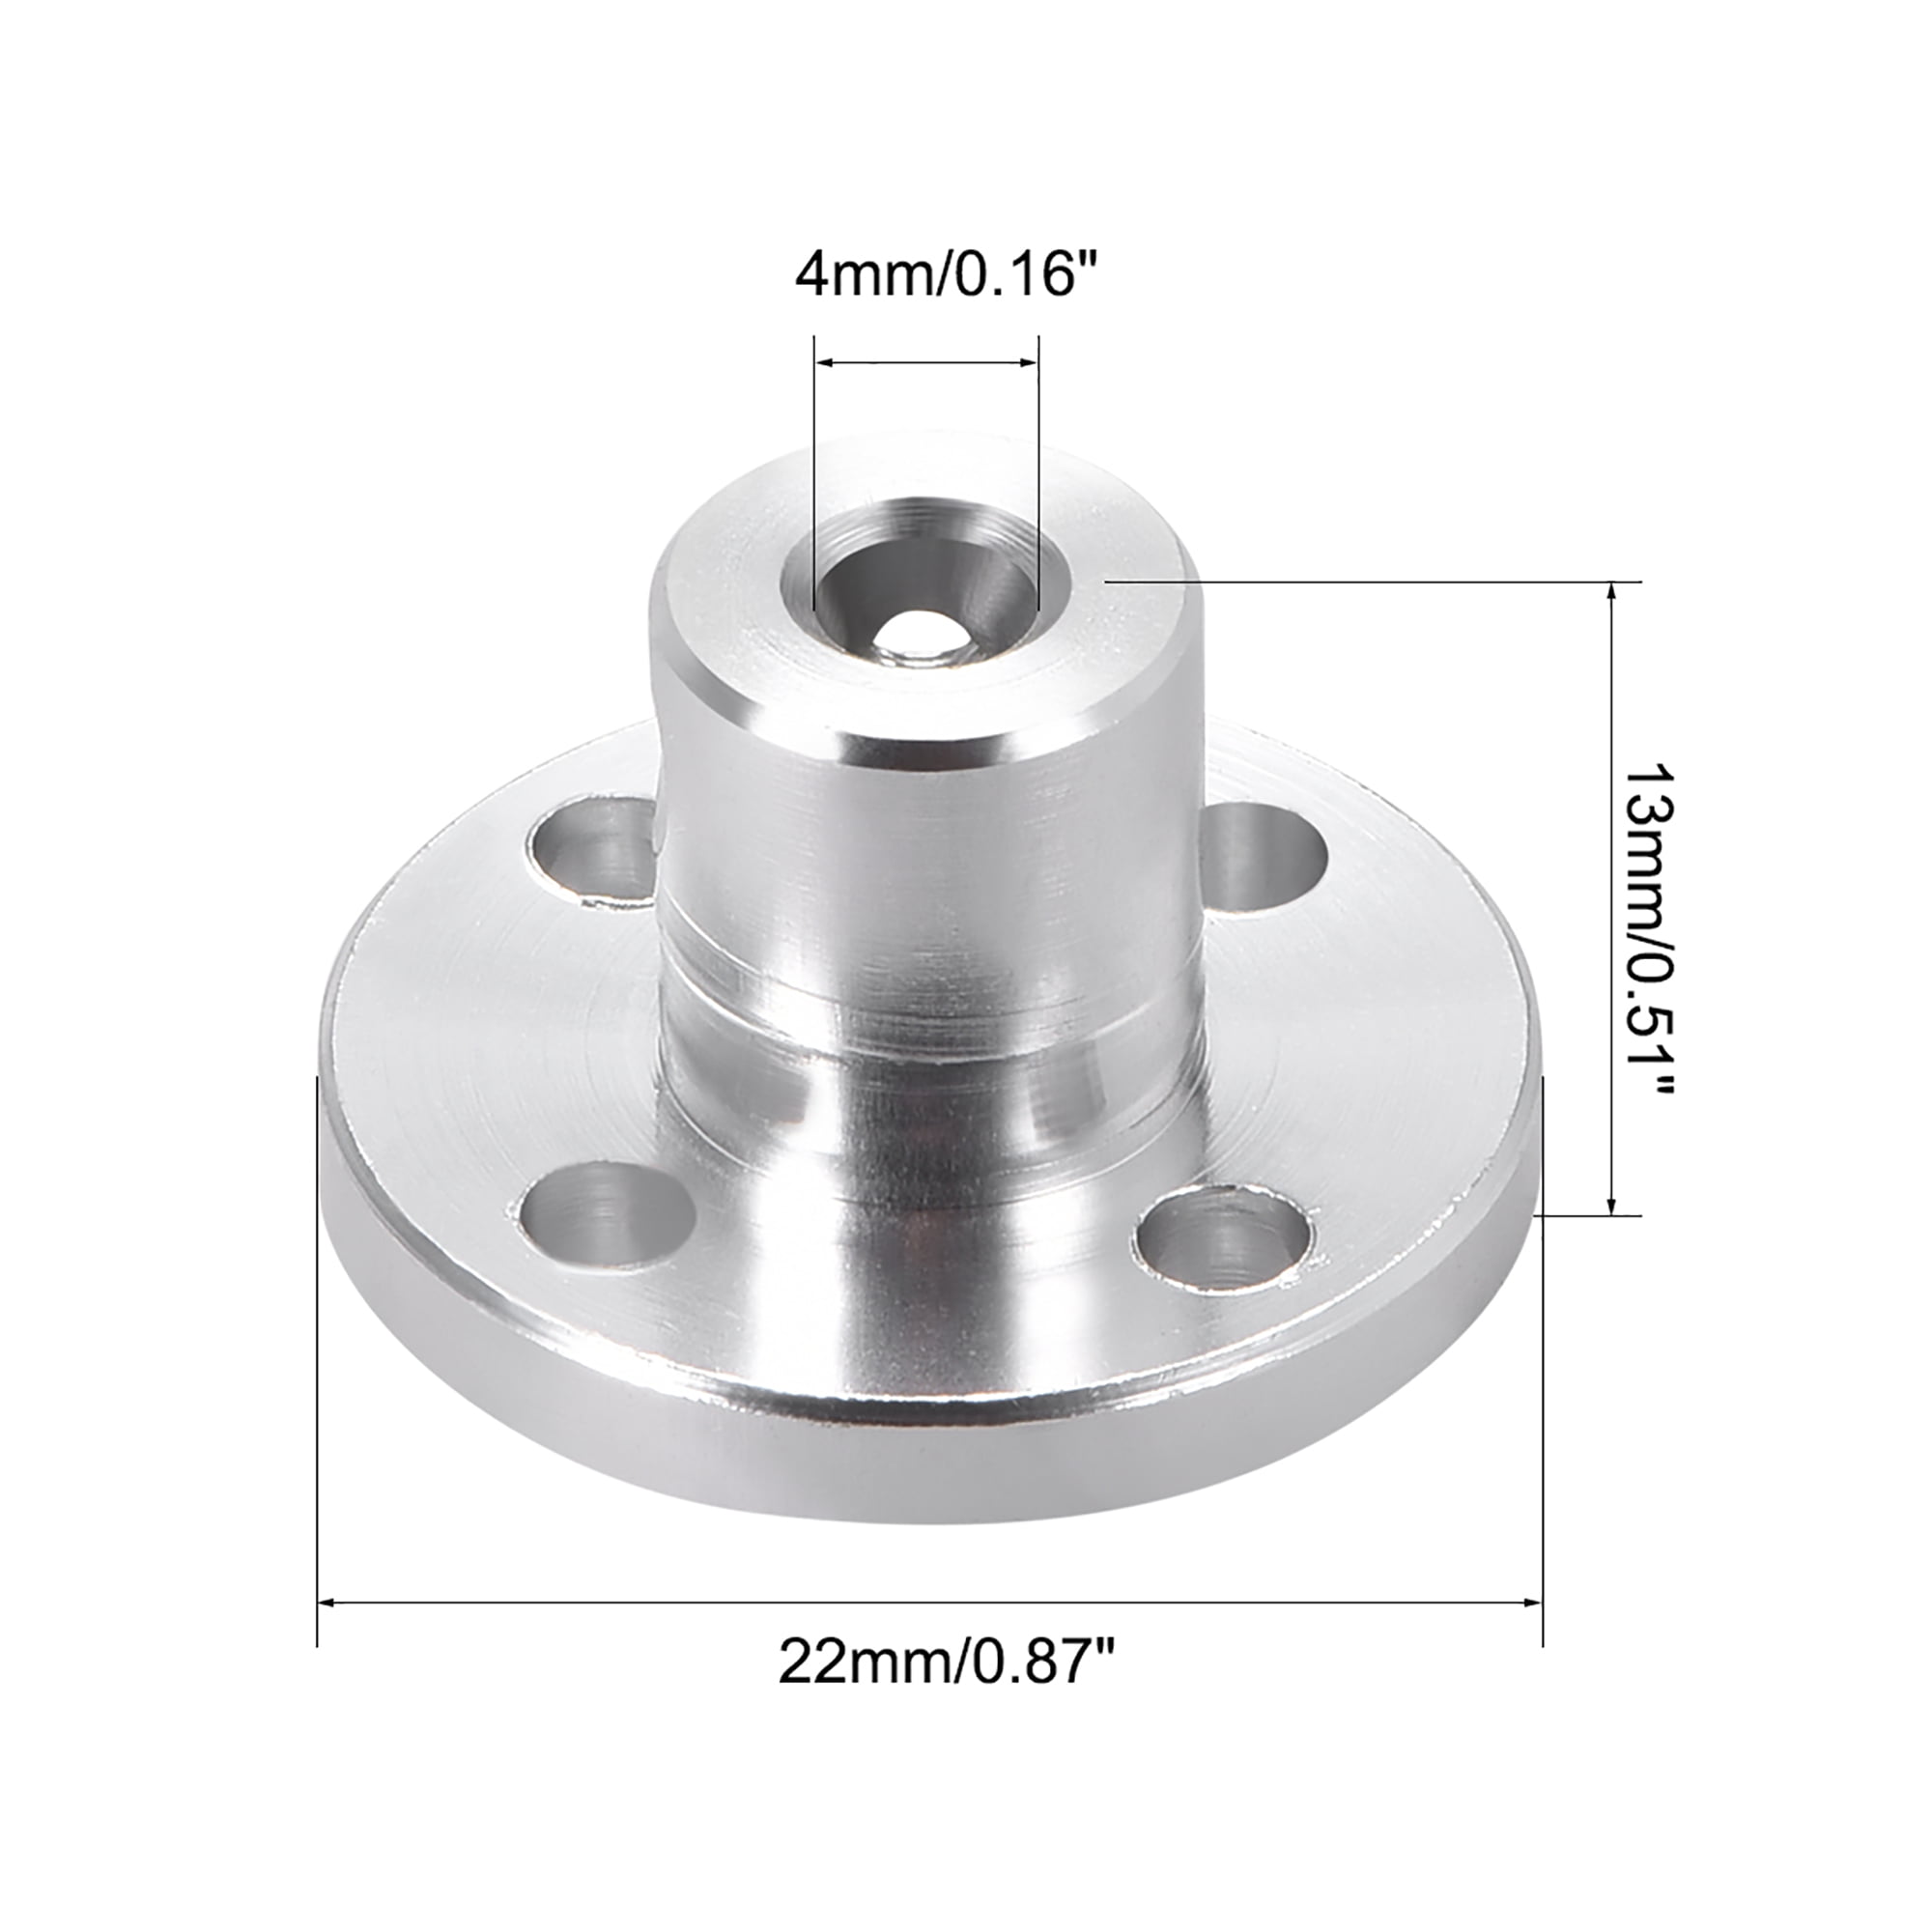 Inner Diameter: 6mm Power Transmission Flange Coupling Nut Motor Guide Shaft Hole Diameter 6mm Threaded Shaft Support Fixed Seat Flange Coupling 